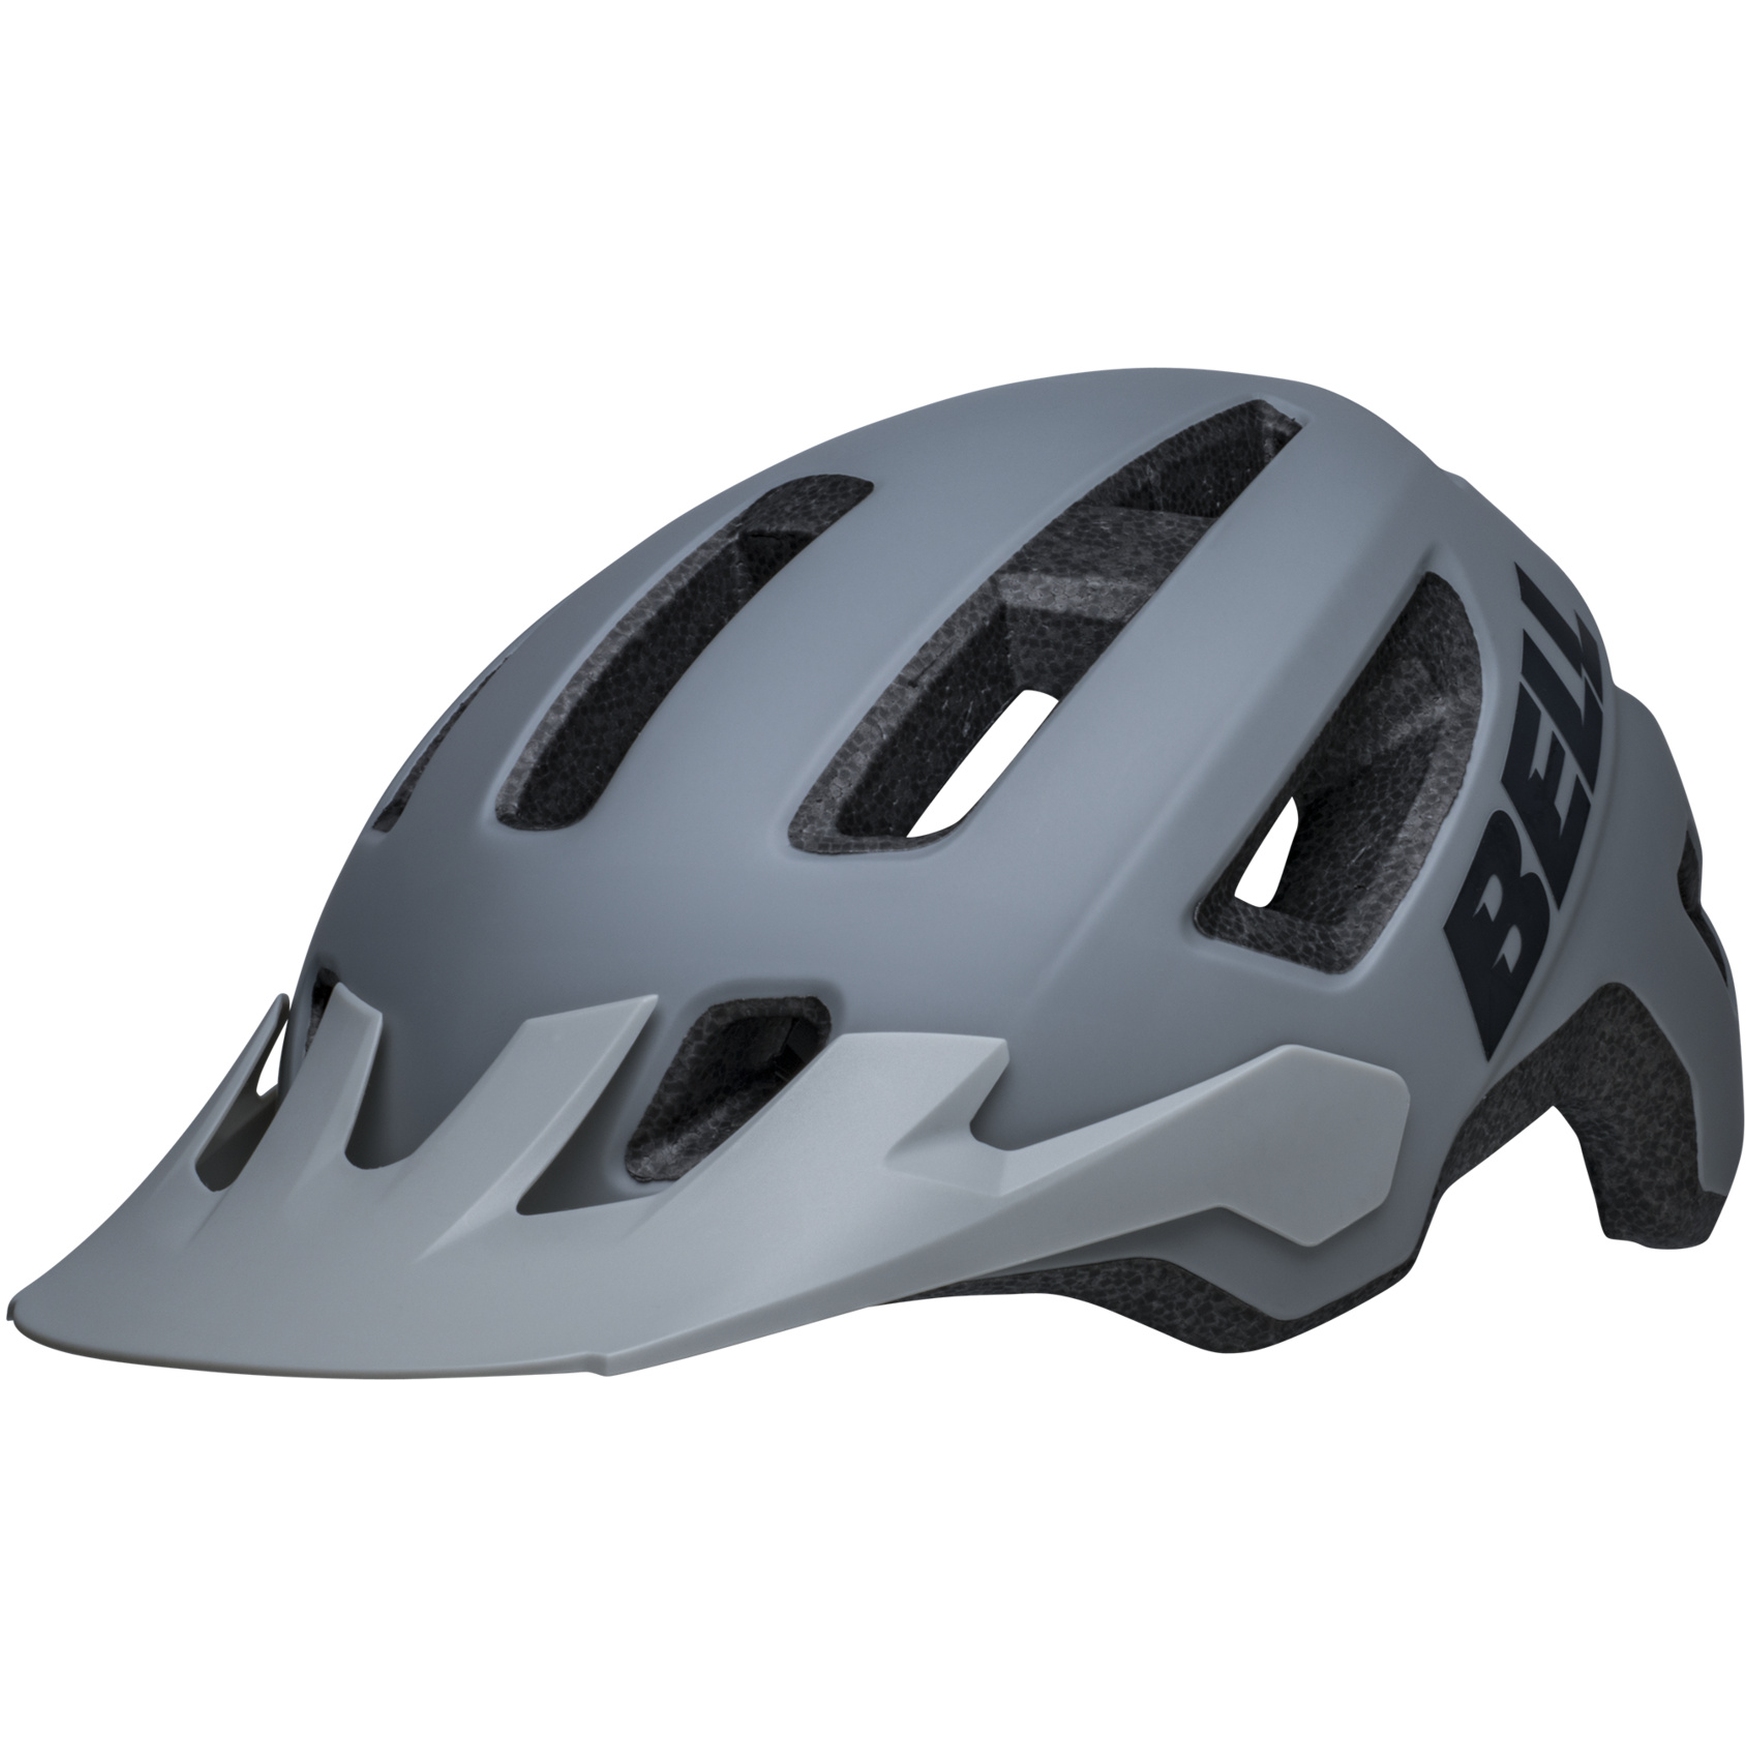 Produktbild von Bell Nomad 2 Helm - matte gray